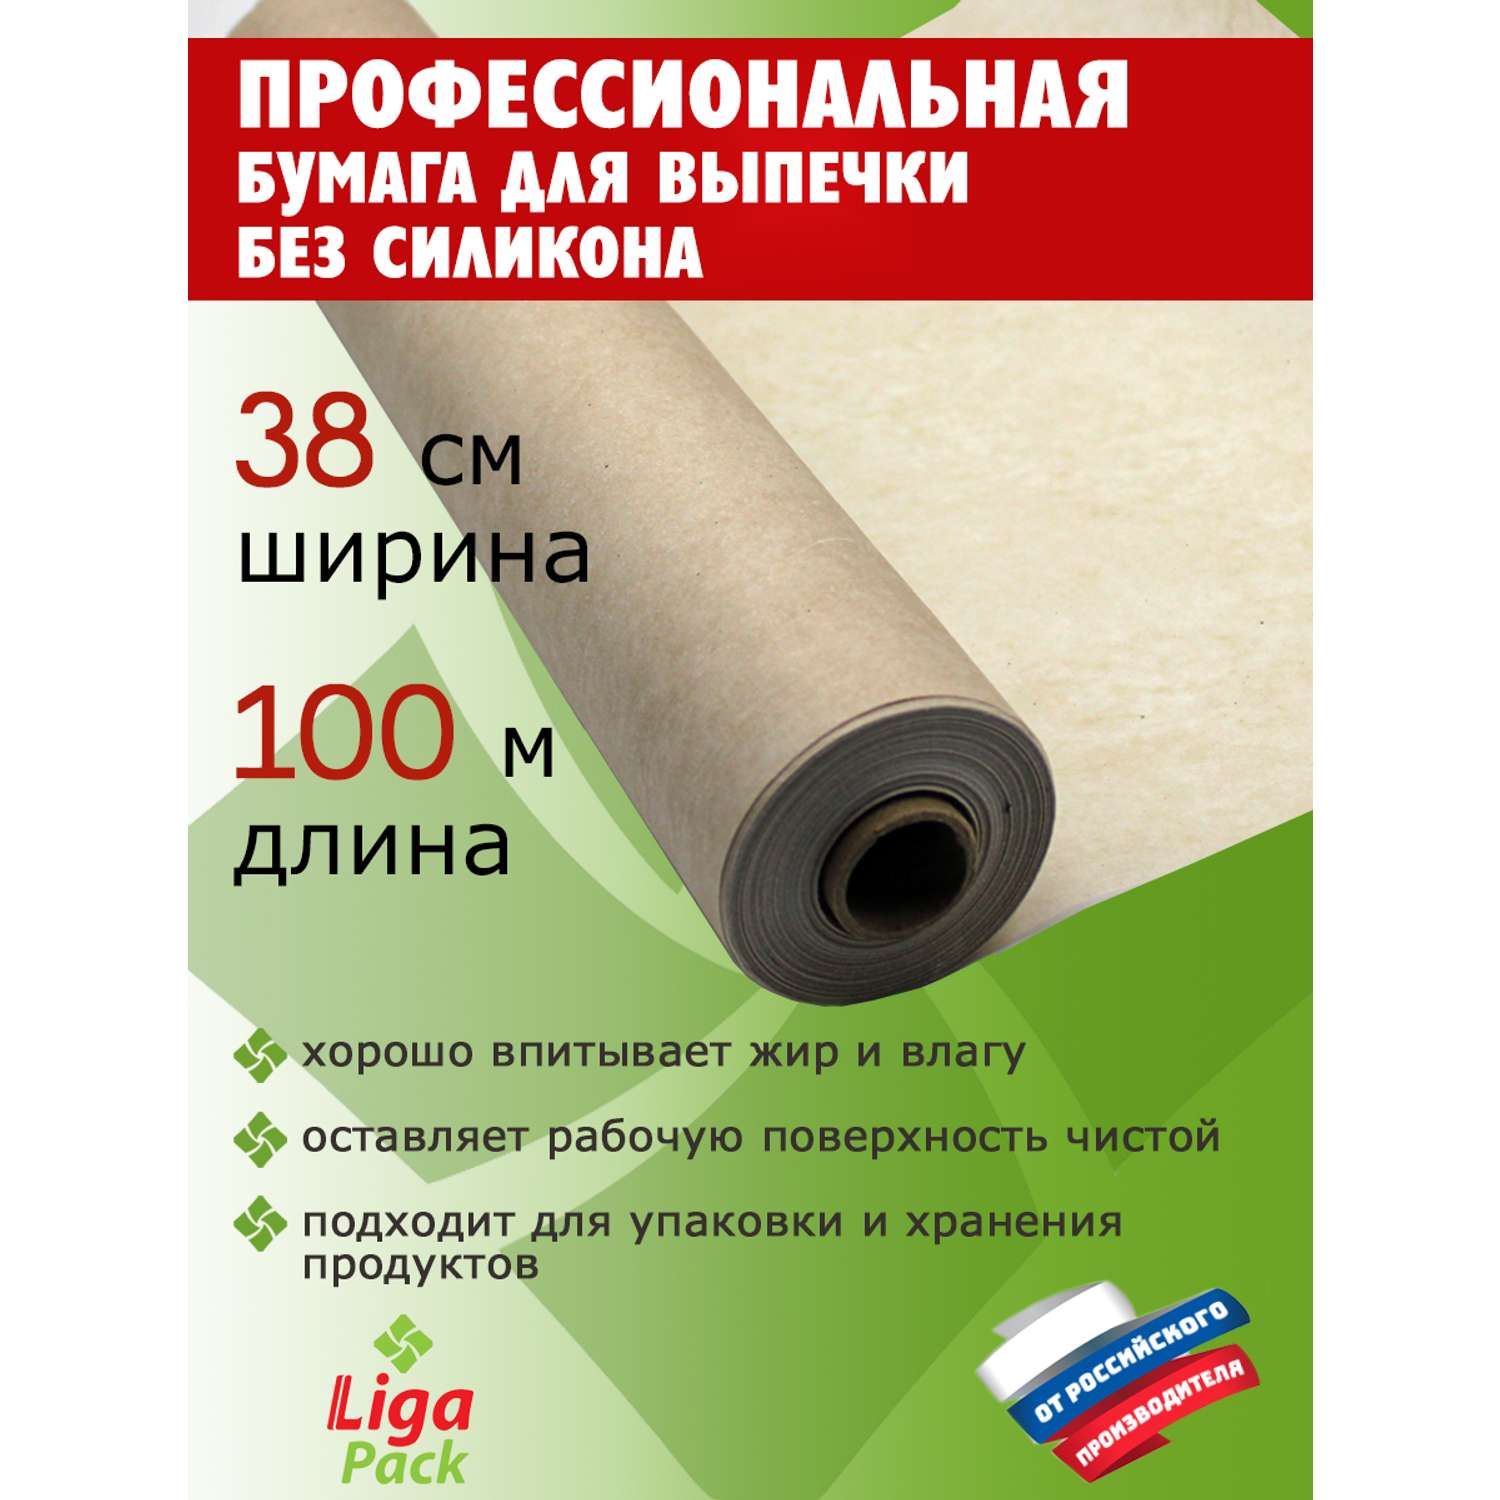 Бумага для выпечки Liga Pack 100 м х 38 см 45 гр/м2 без силикона профессиональная - фото 2